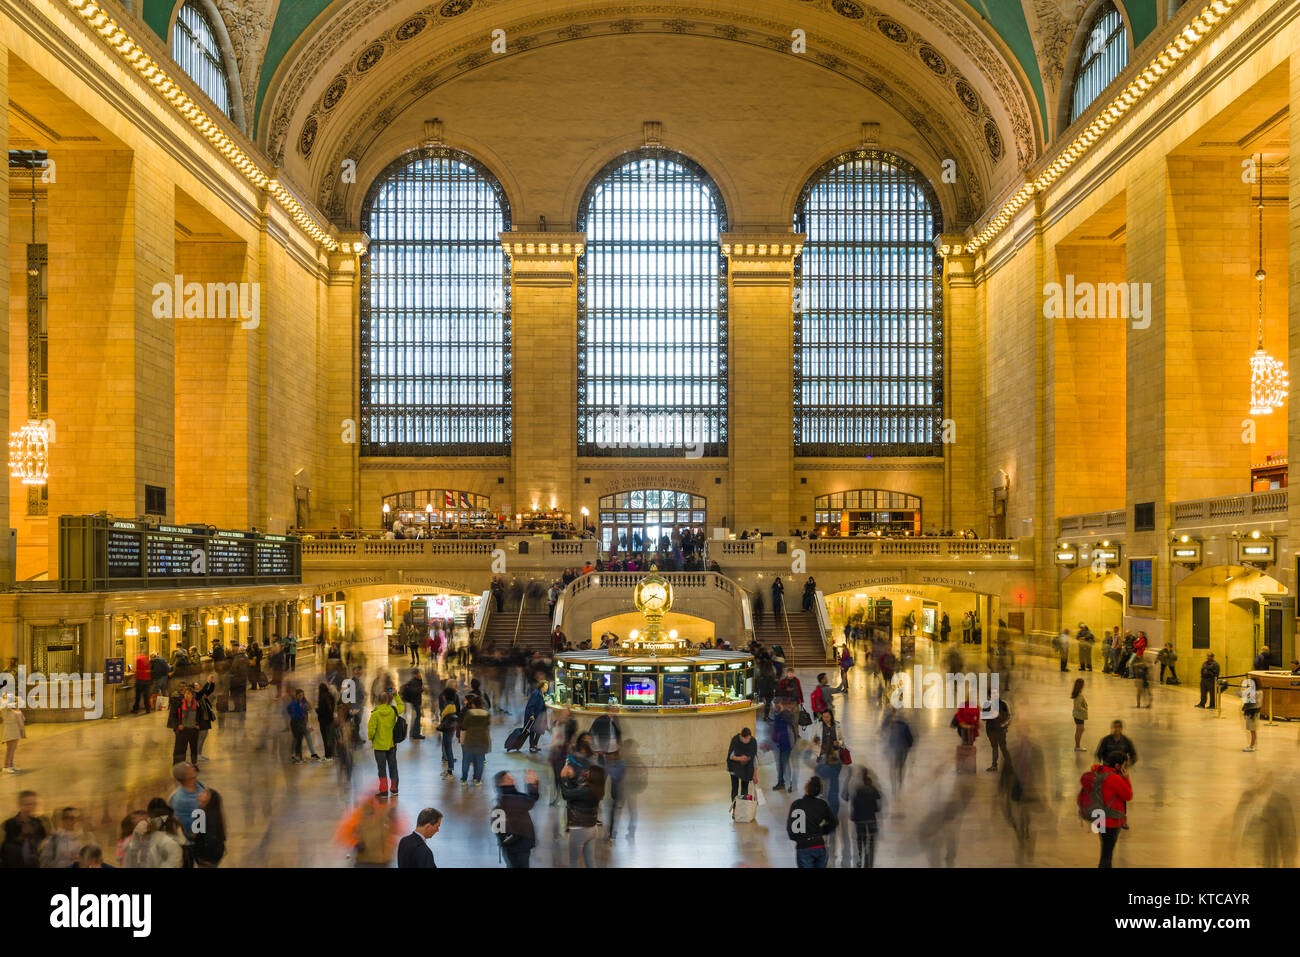 Die zentralen Eingangsbereich Innenraum des Grand Central Terminal mit Massen von Pendler und Touristen, Midtown Manhattan, New York, USA Stockfoto